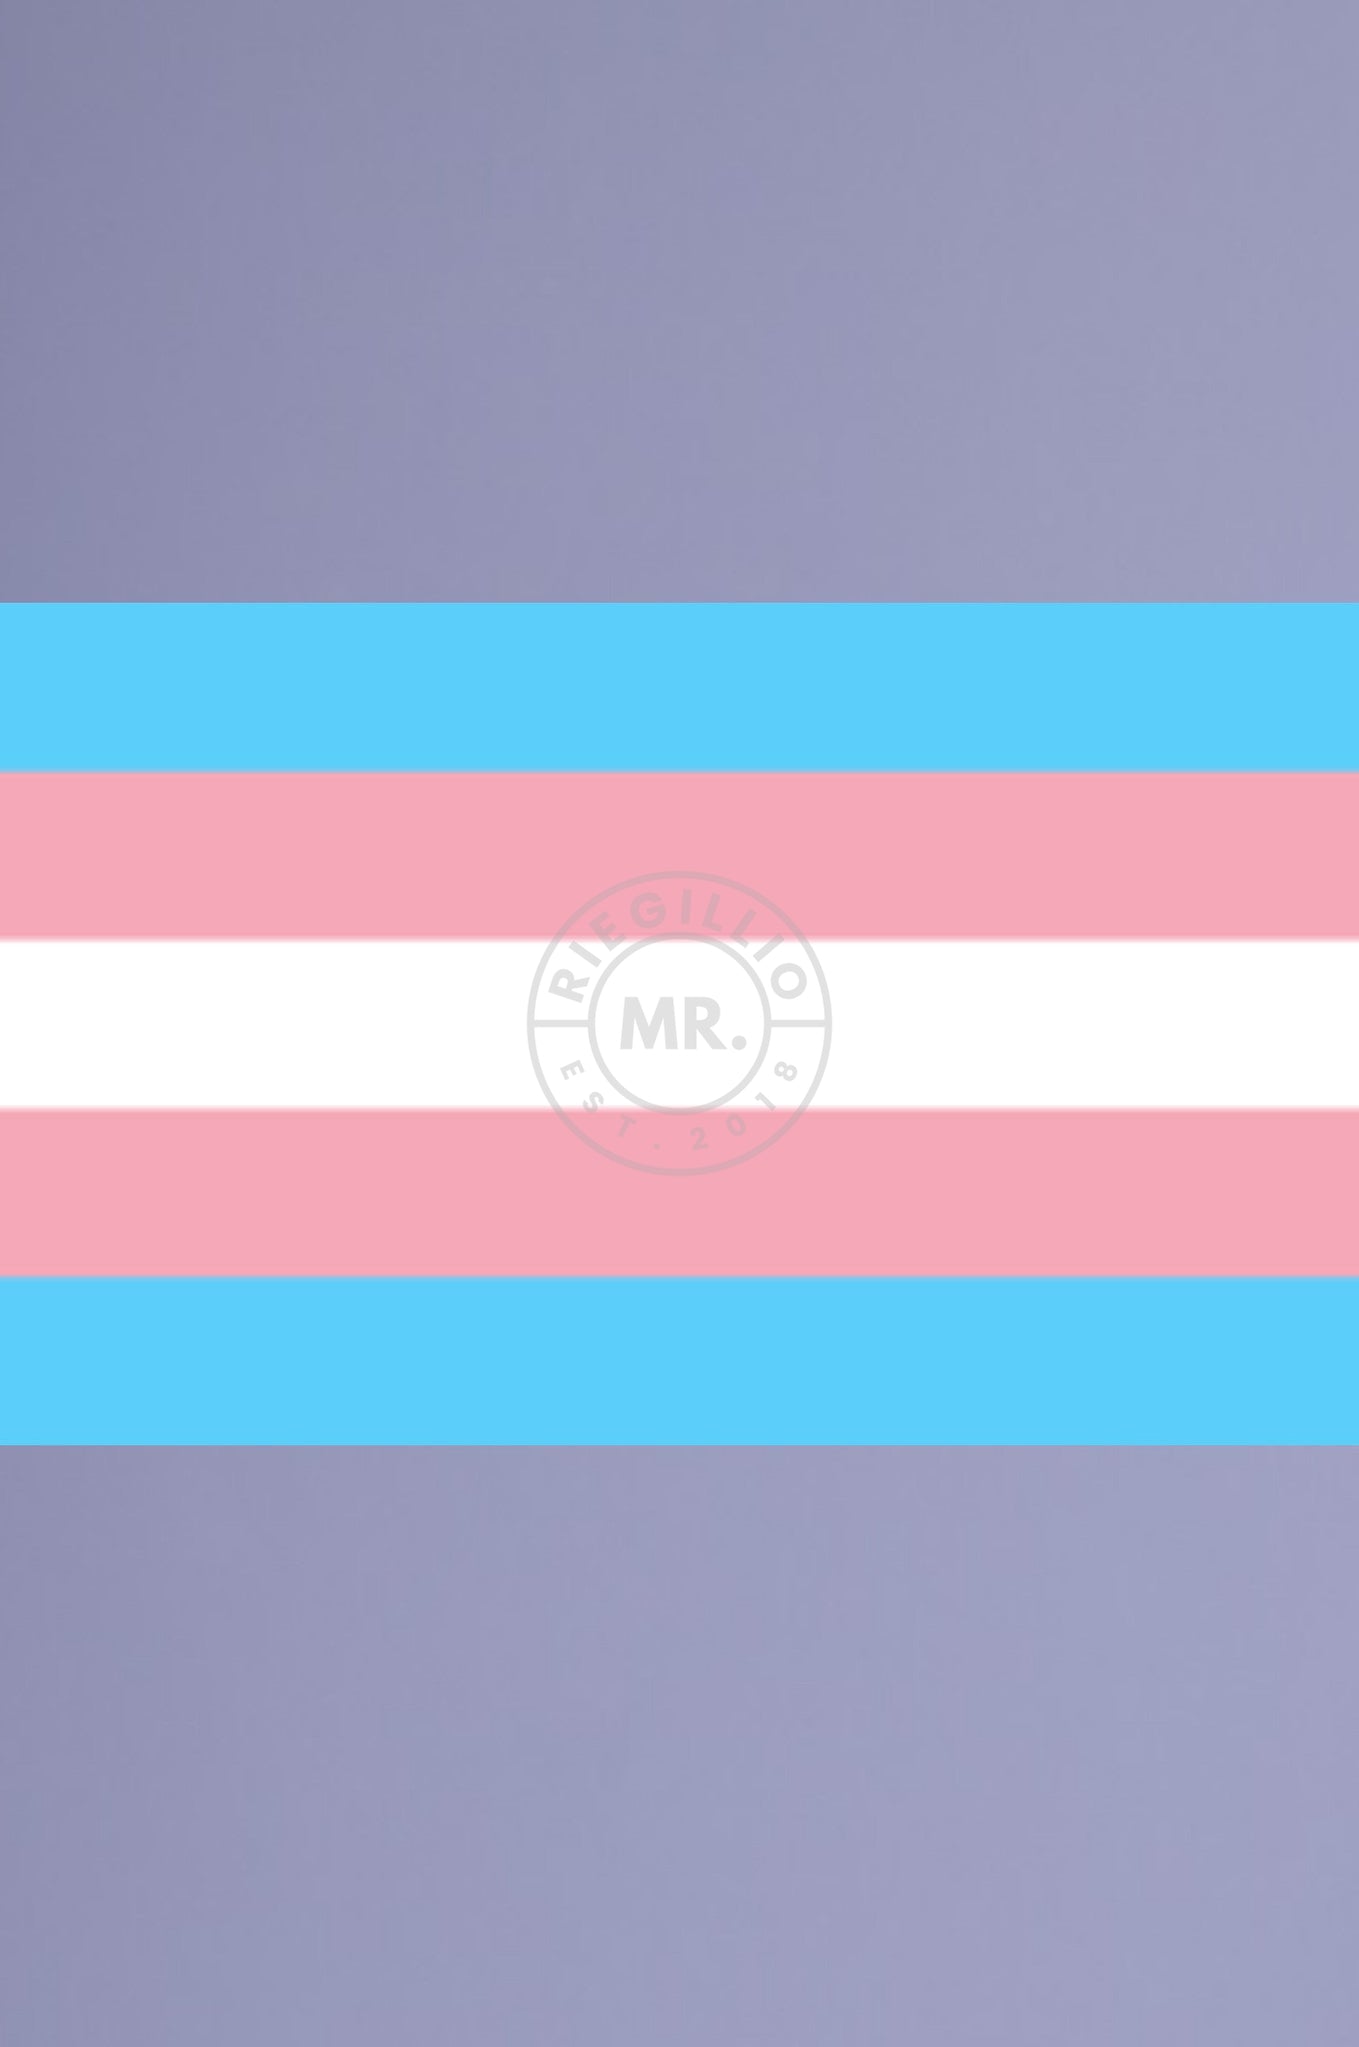 Transgender Pride Flag 90 x 150 cm-at MR. Riegillio